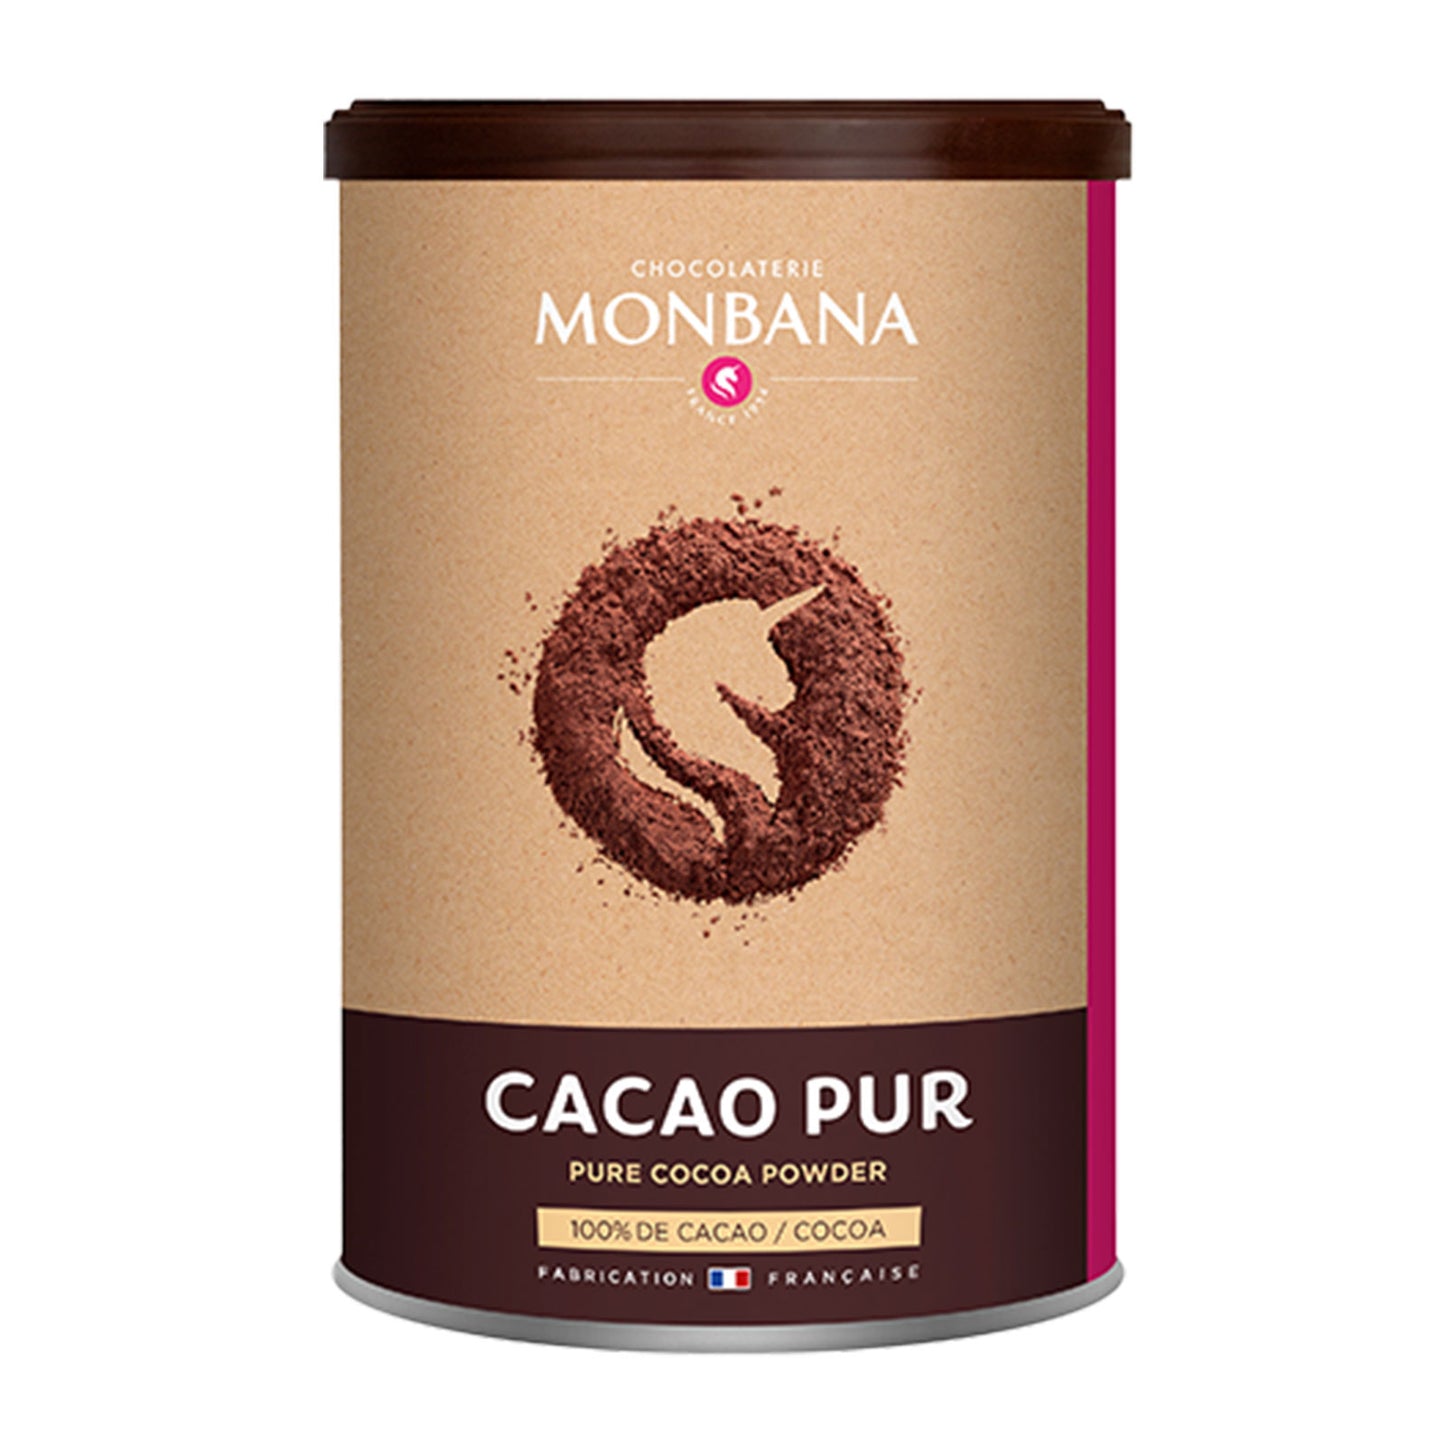 Cacao Pur Monbana